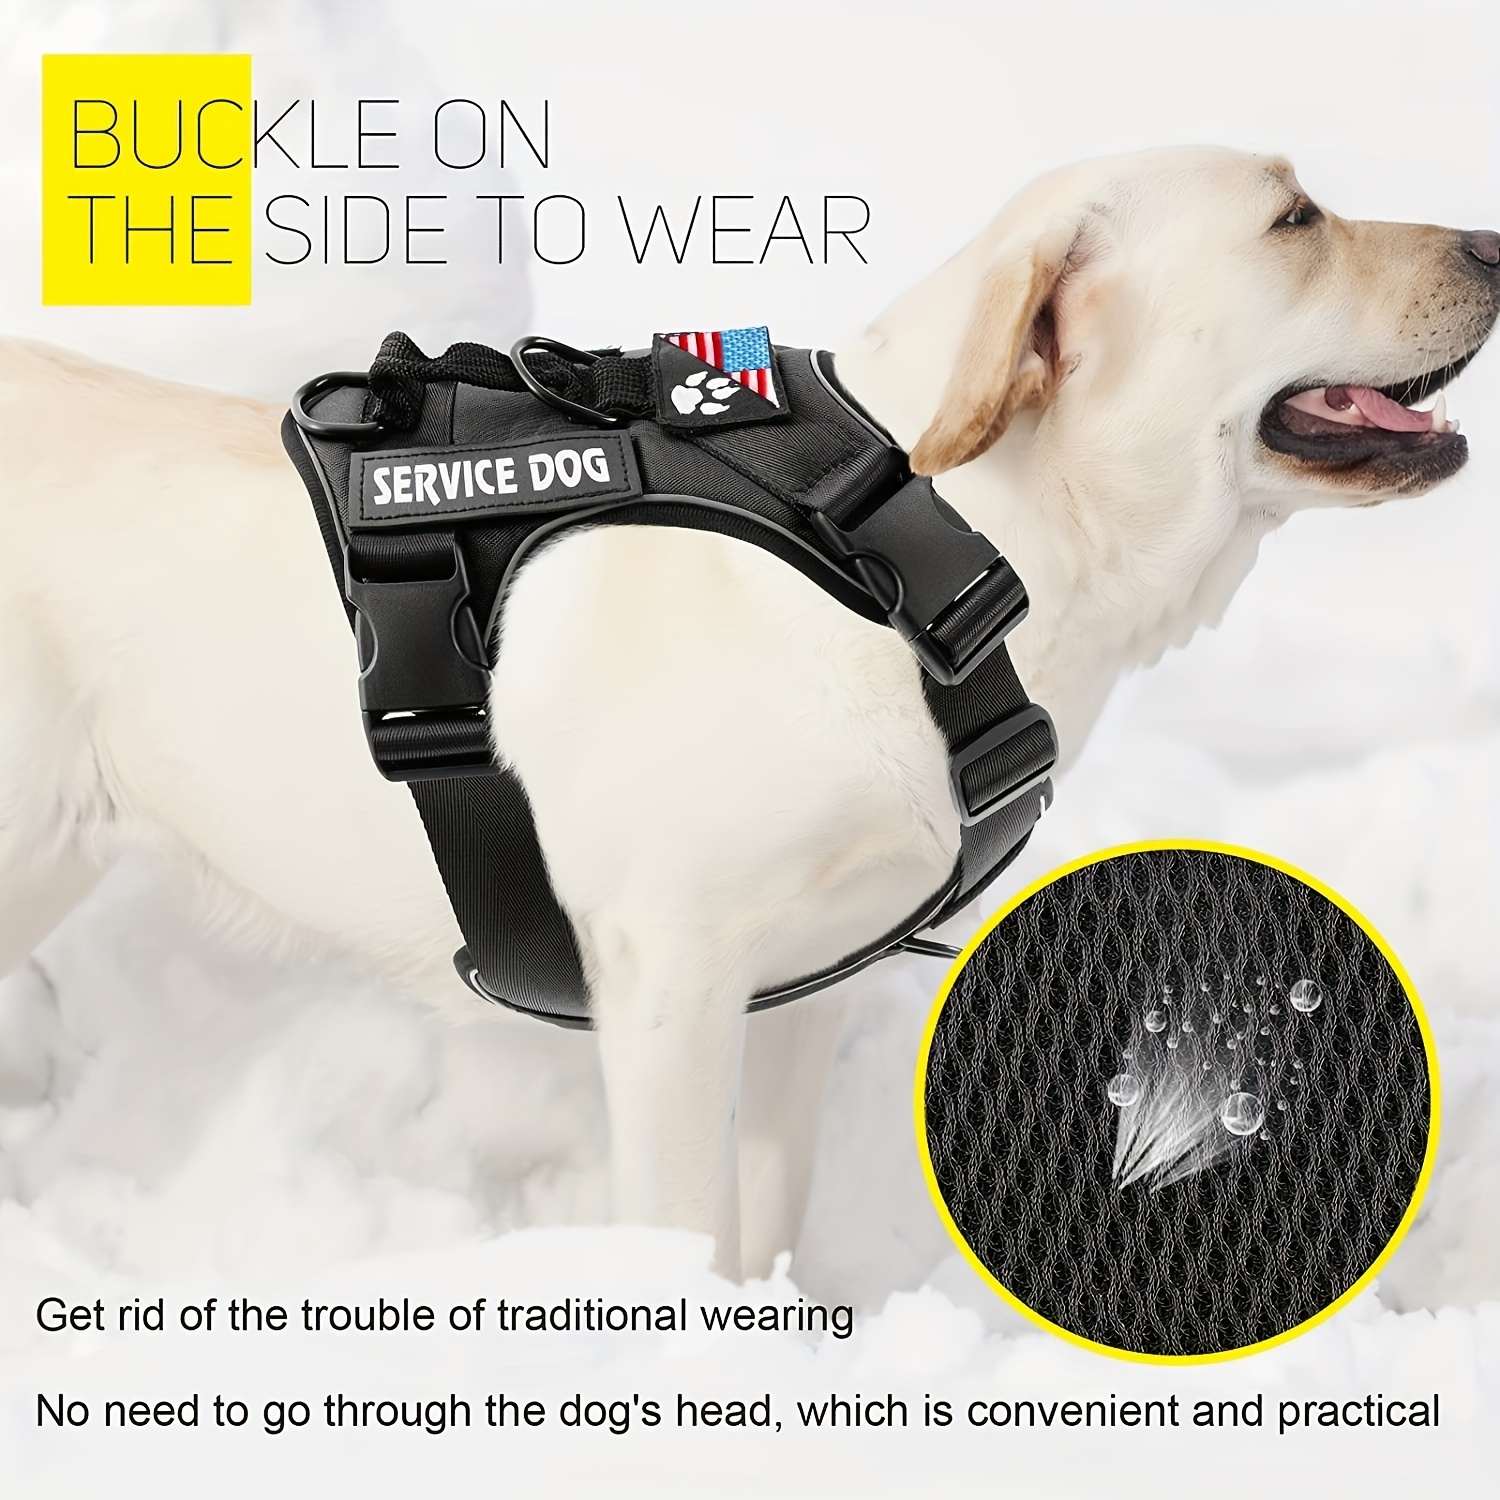 Service Dog Vest Harness w/ 2 Reflective SERVICE DOG Patches